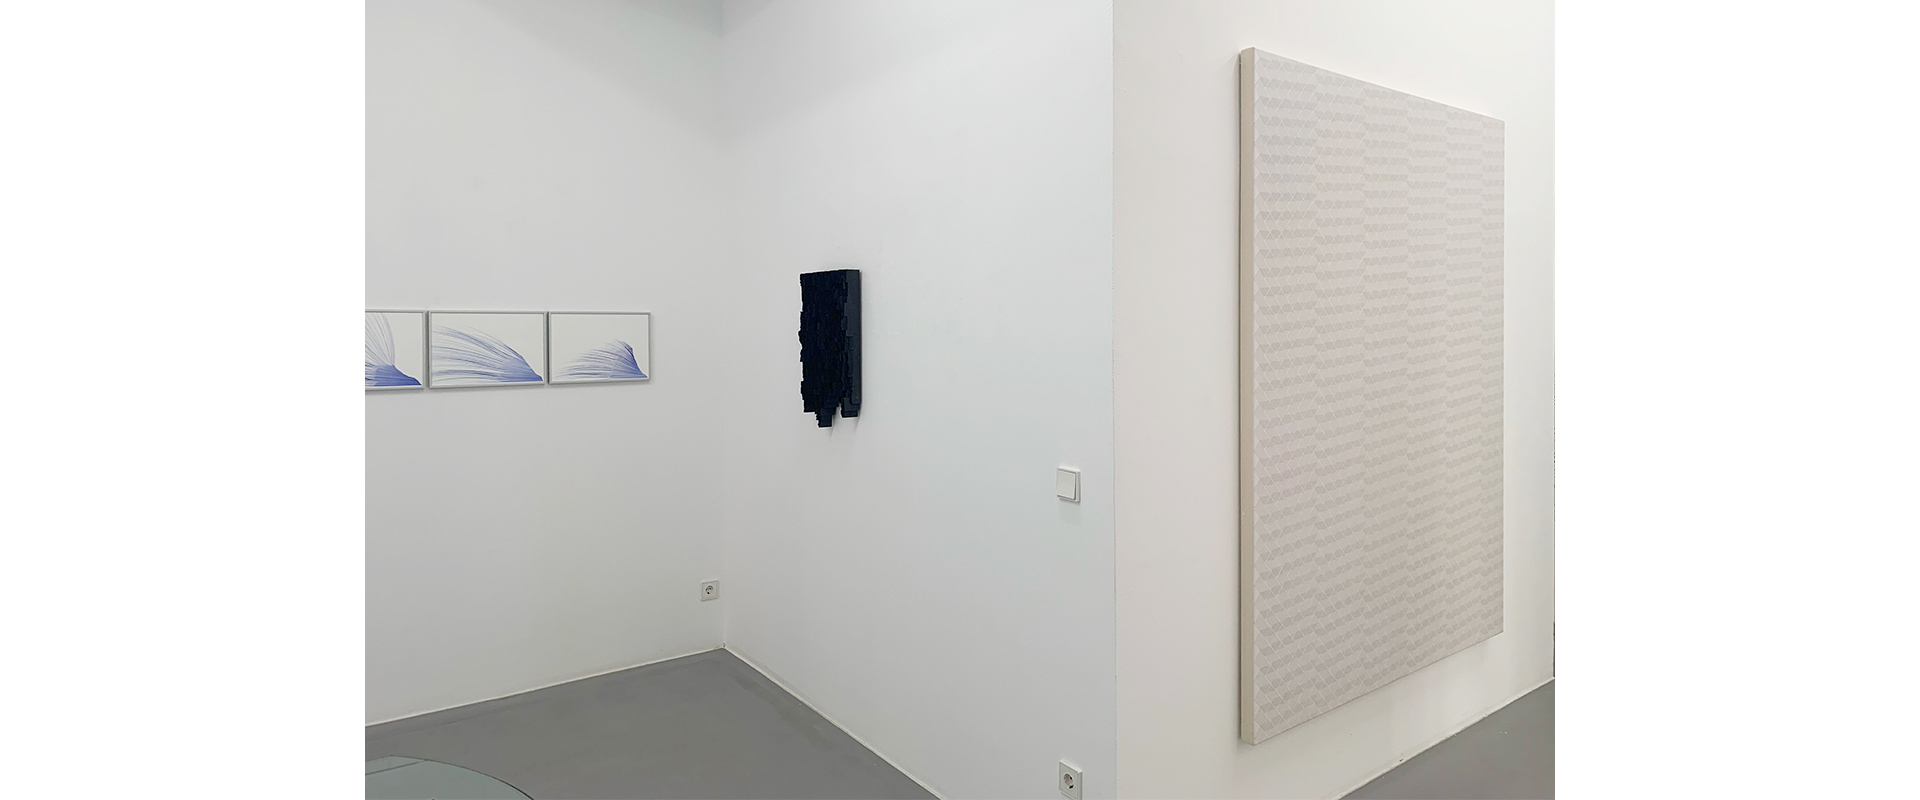 Ausstellungsansicht "5 Jahre später. Bender Schwinn Projekt Reloaded", Galerie Renate Bender 2023